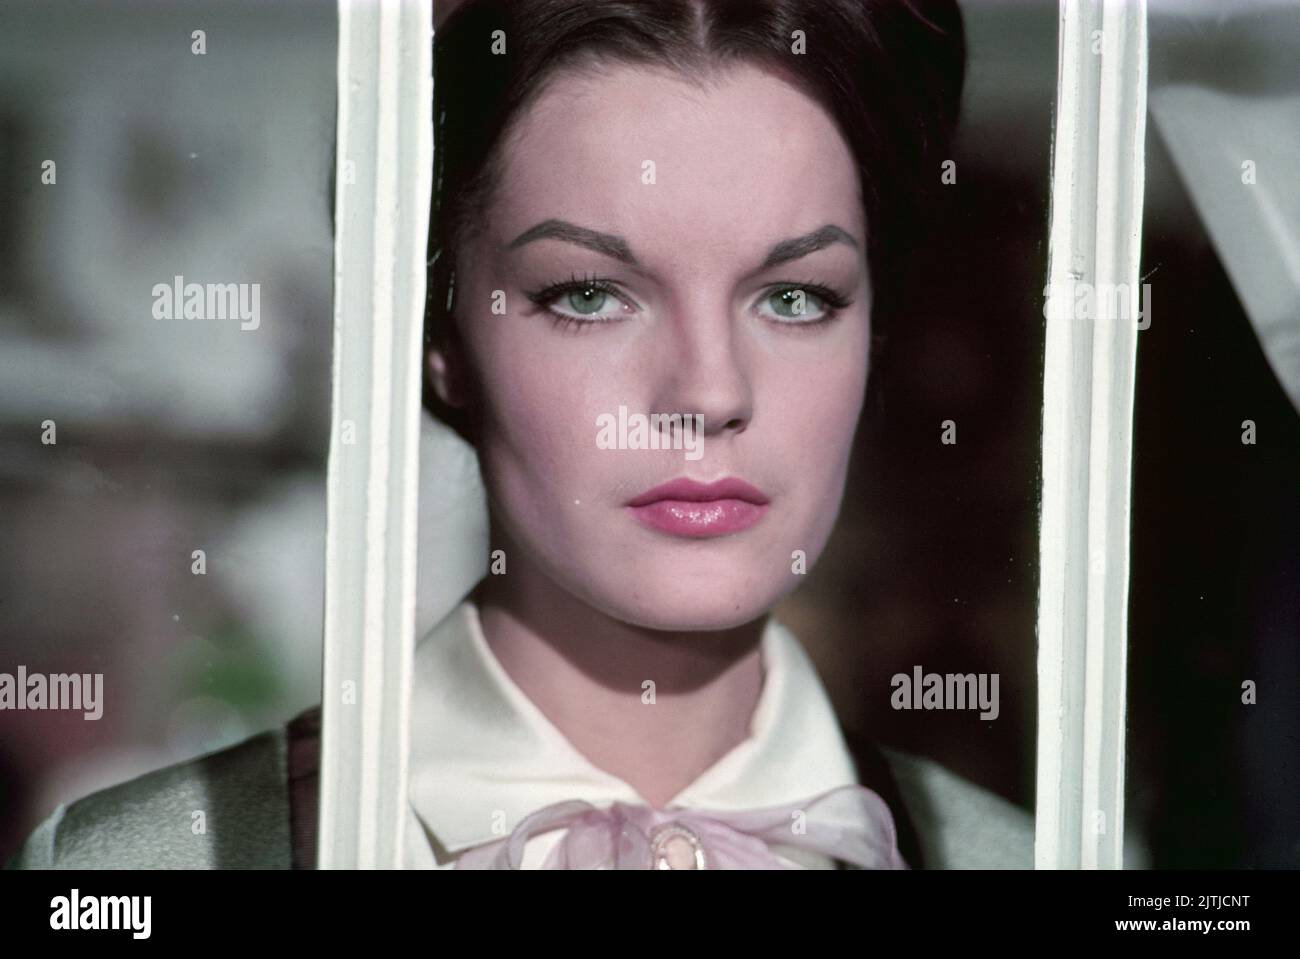 Katia, aka Katja, die ungekrönte Kaiserin, Frankreich 1959, Regie: Robert Siodmak, Darsteller: Romy Schneider Foto Stock